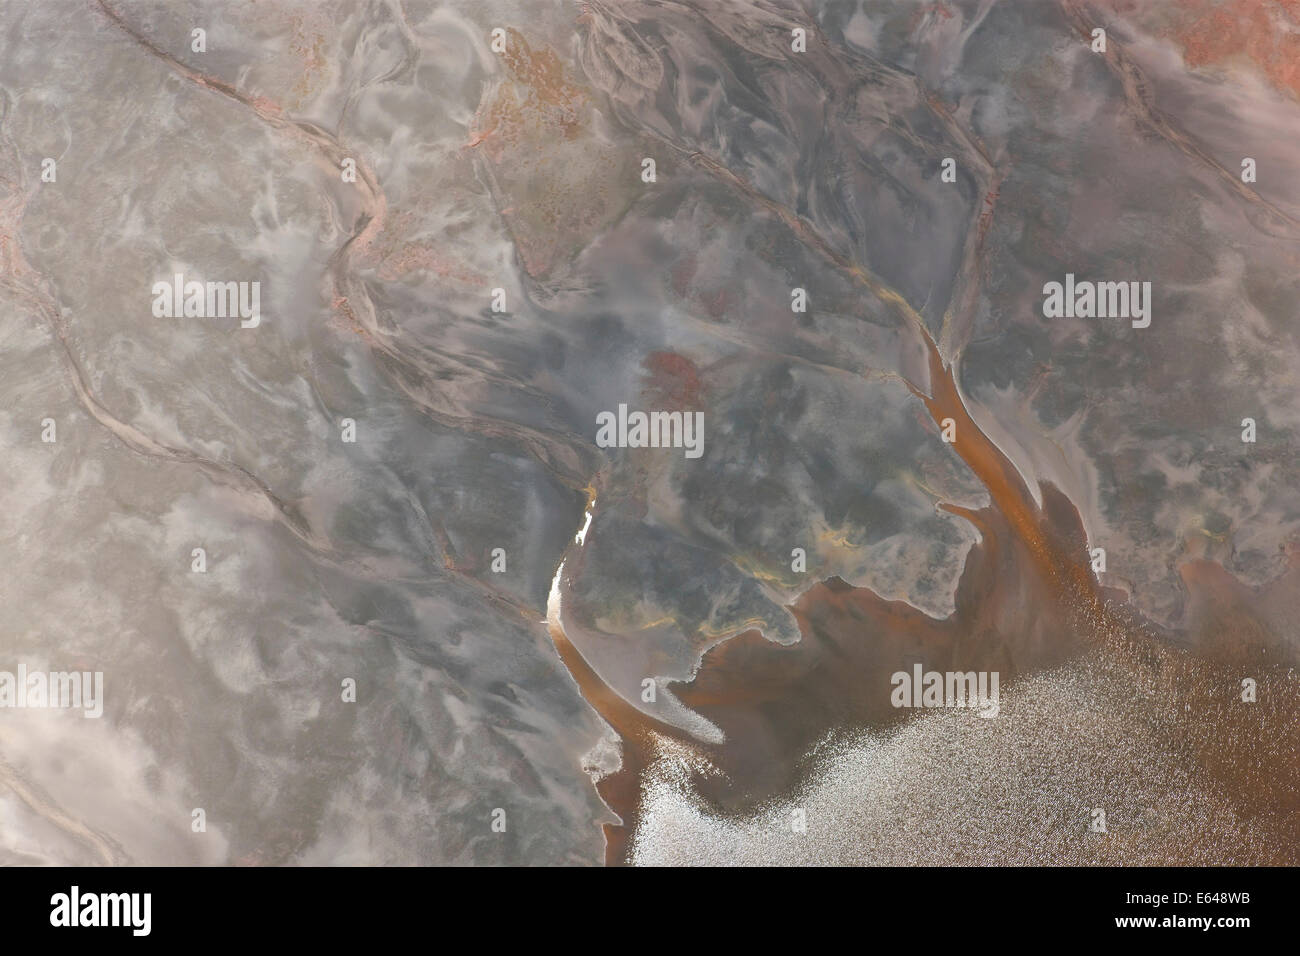 Vue aérienne de minéraux de fer oxydé dans l'eau dans le vieux bassin minier, RÃ-o Tinto. La province de Huelva, Espagne Banque D'Images